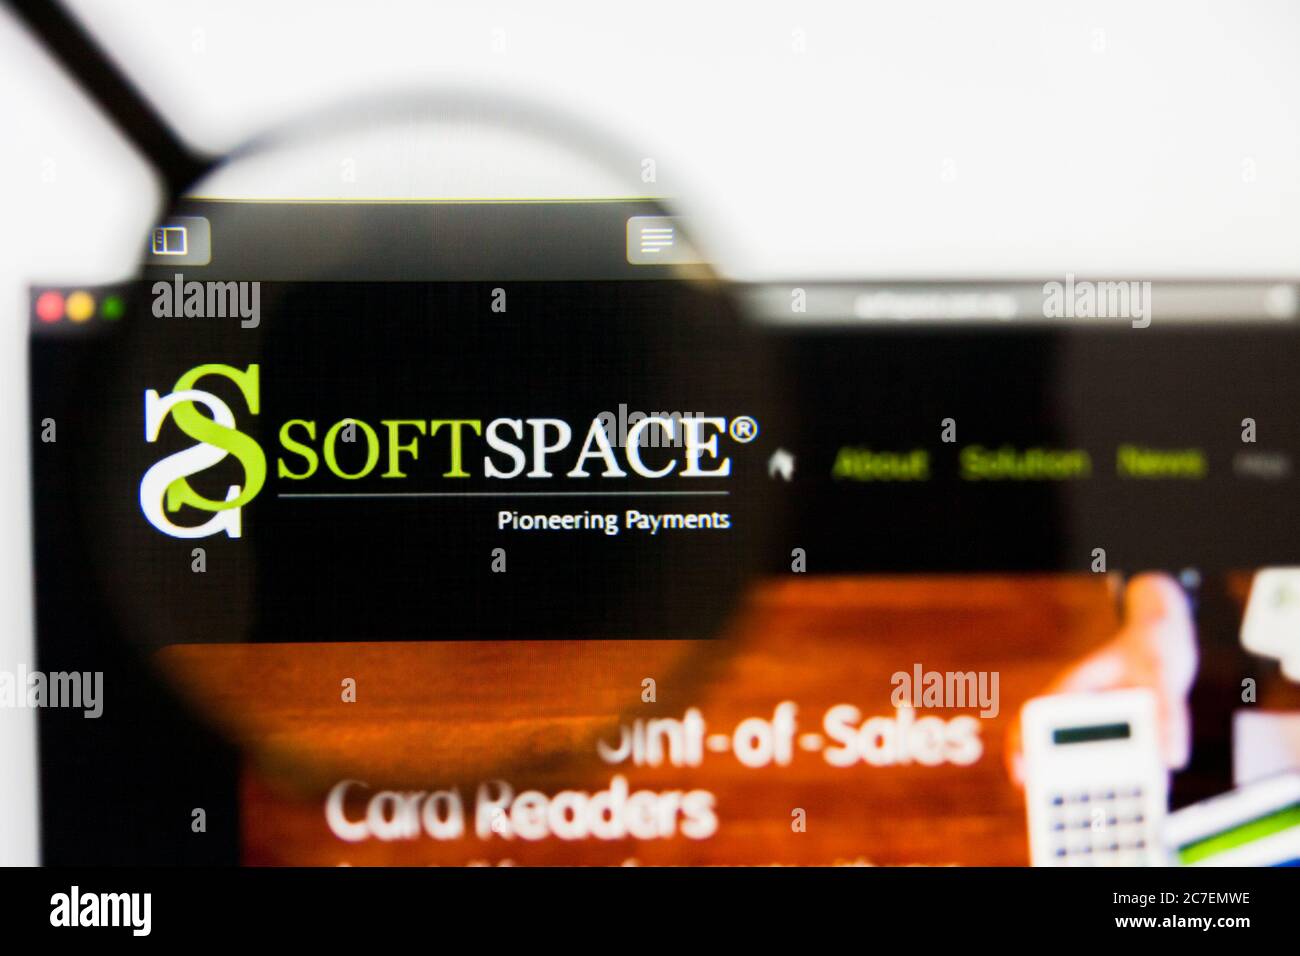 San Francisco, California, USA - 29 Marzo 2019: Editoriale illustrativo della homepage del sito Web di Soft Space. Logo Soft Space visibile sullo schermo del display. Foto Stock